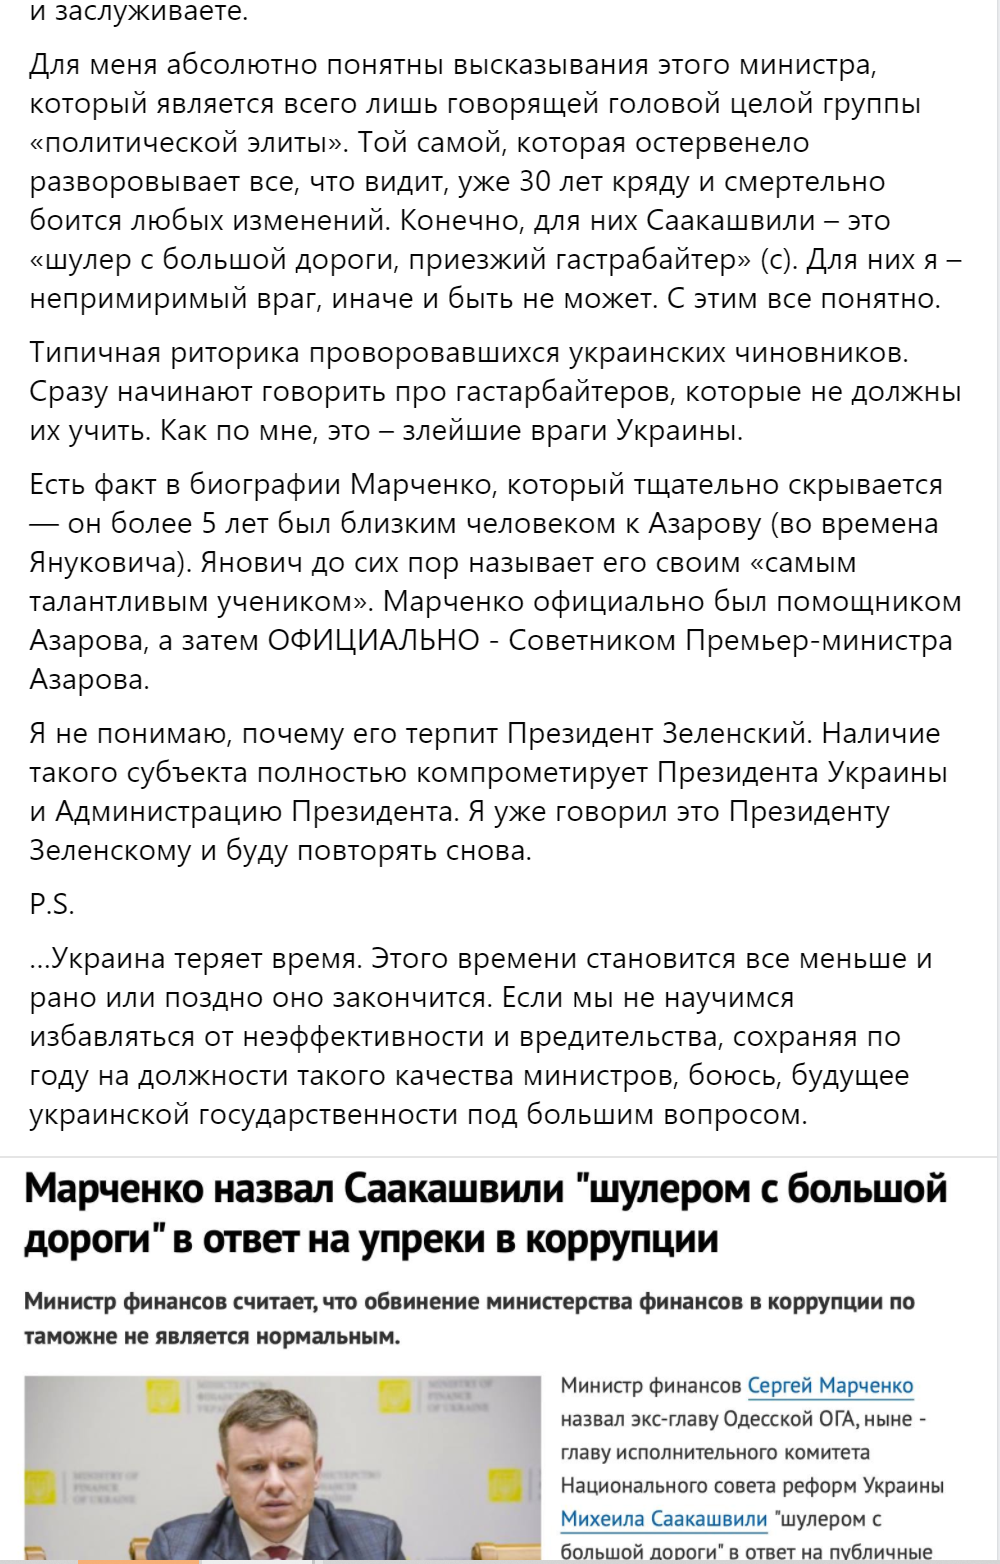 Саакашвілі назвав міністра фінансів Марченка «козявкою і нікчемою»